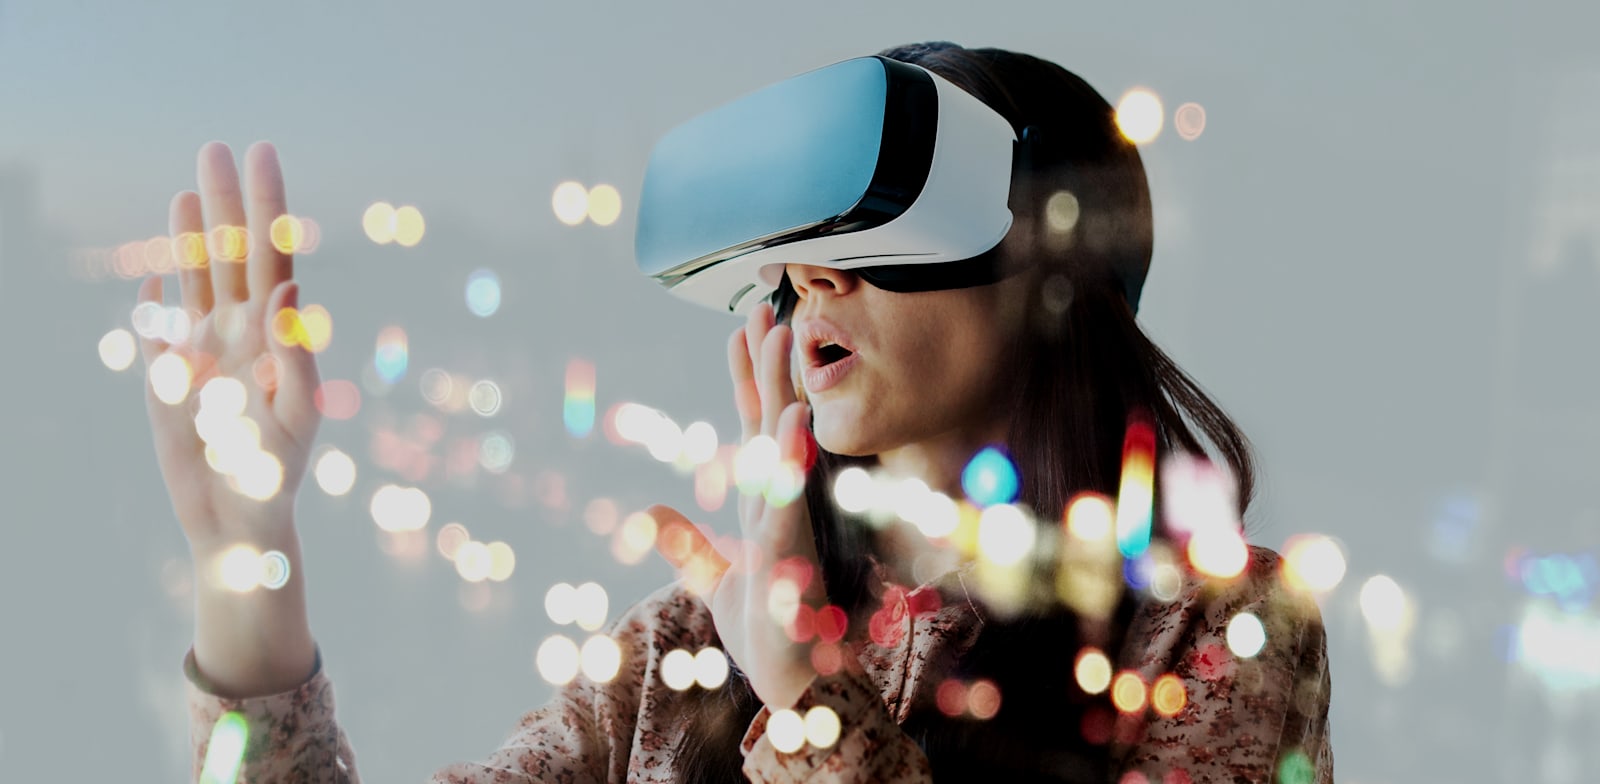 בקרוב נראה גל של משקפי AR ו־VR עם הרבה יותר תוכן / צילום: Shutterstock